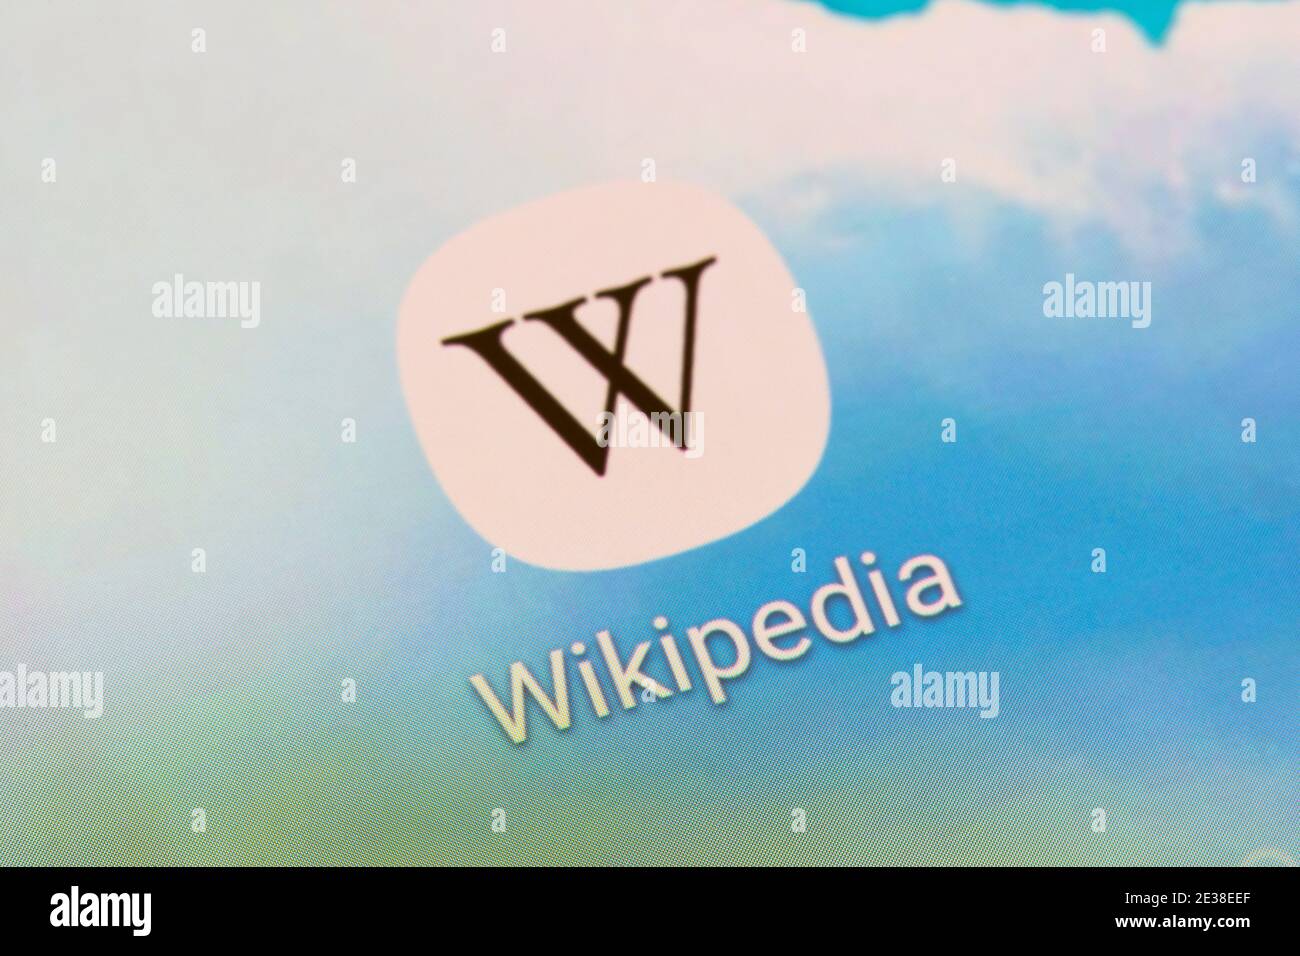 Un primo piano sull'icona e sul logo di Wikipedia sullo schermo di uno smartphone. Wikipedia è un'enciclopedia online gratuita ospitata dalla fondazione Wikipedia Foto Stock